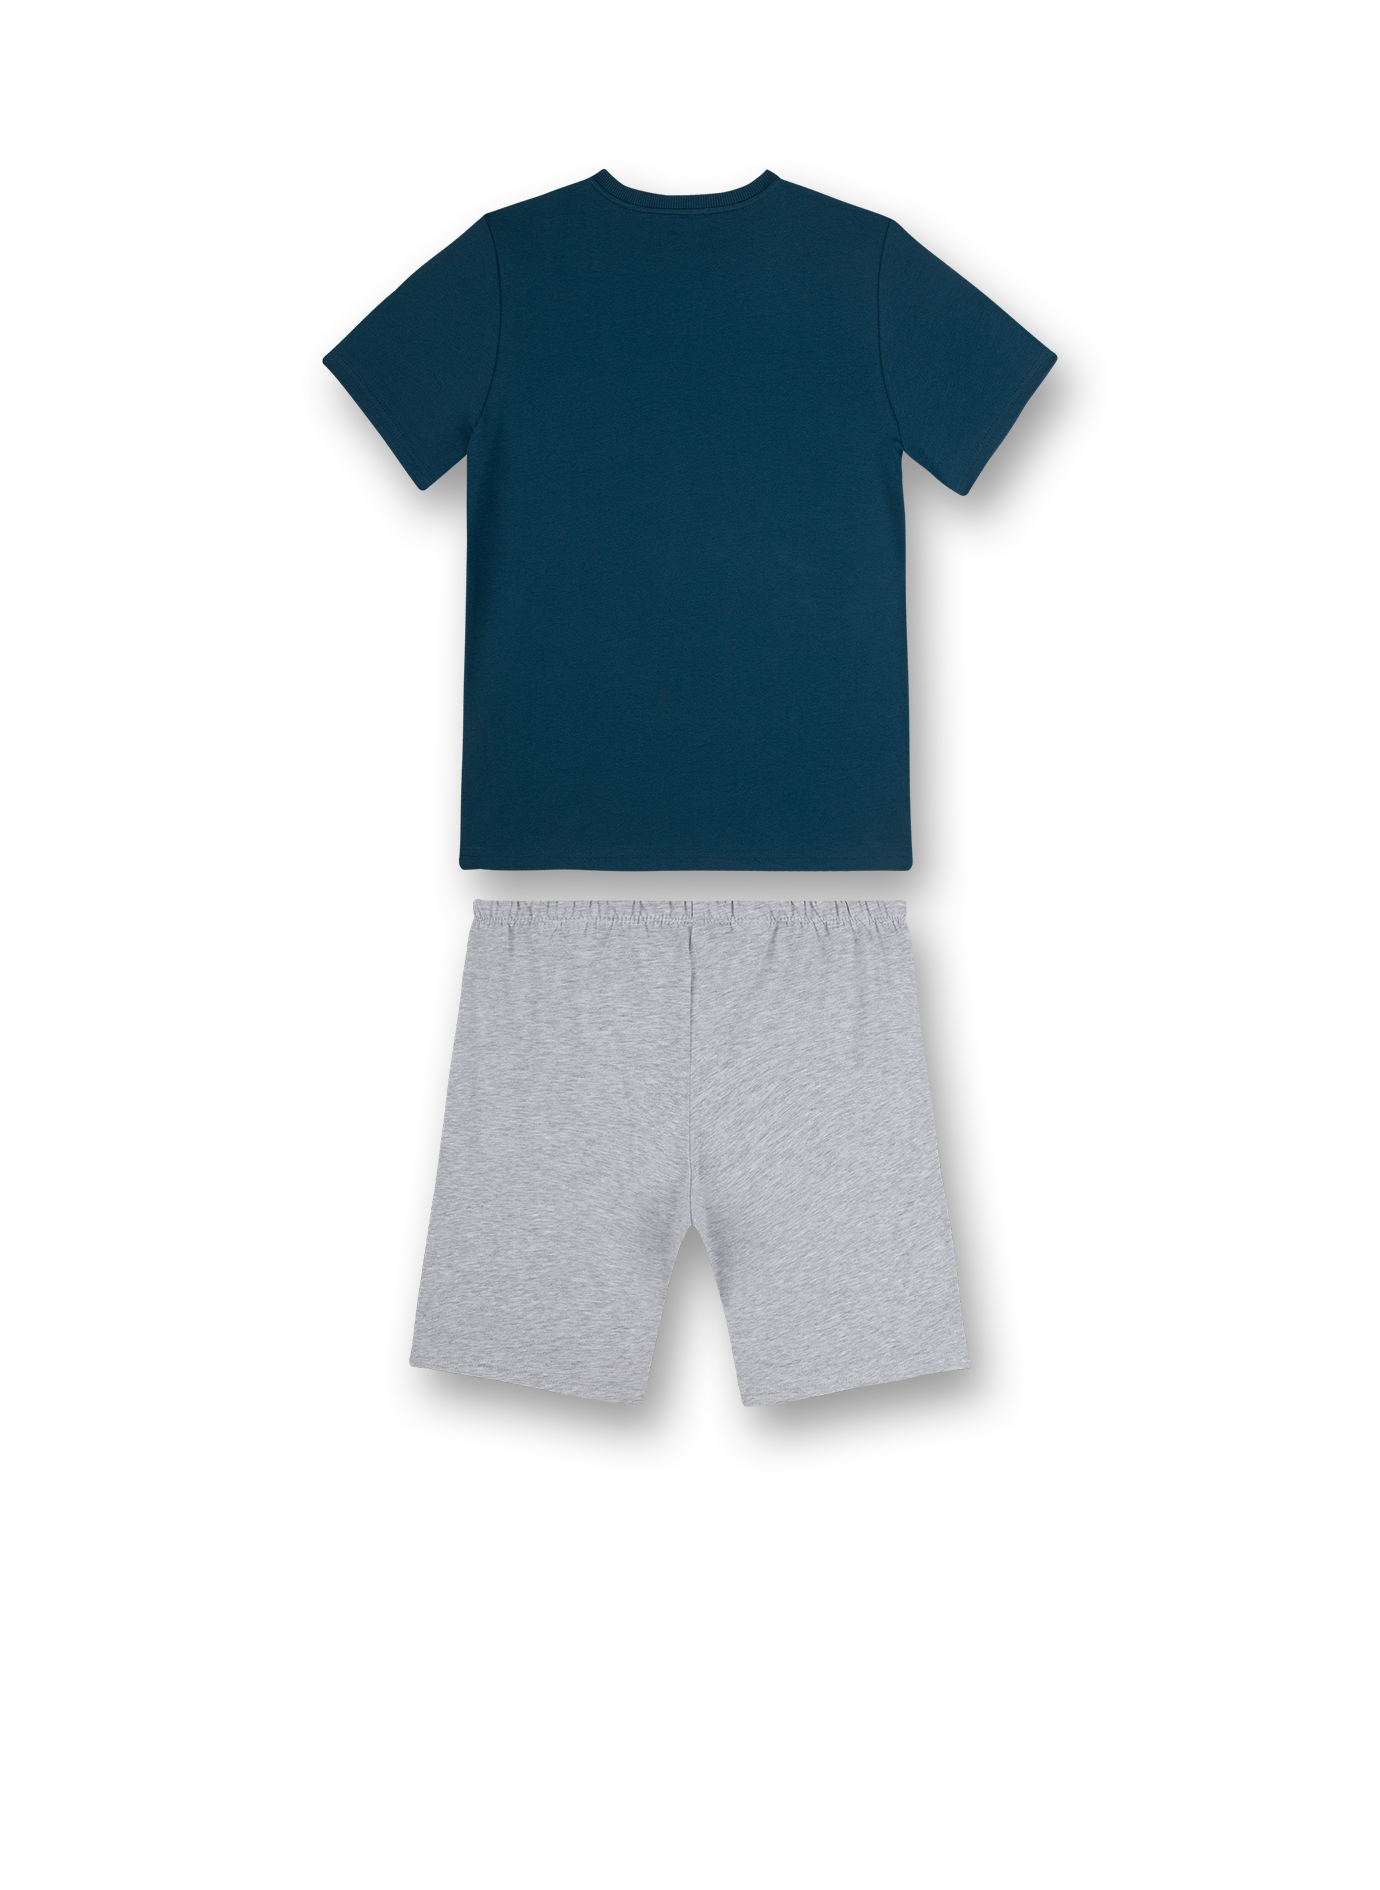 Jungen-Schlafanzug kurz Blau Ocean Breeze